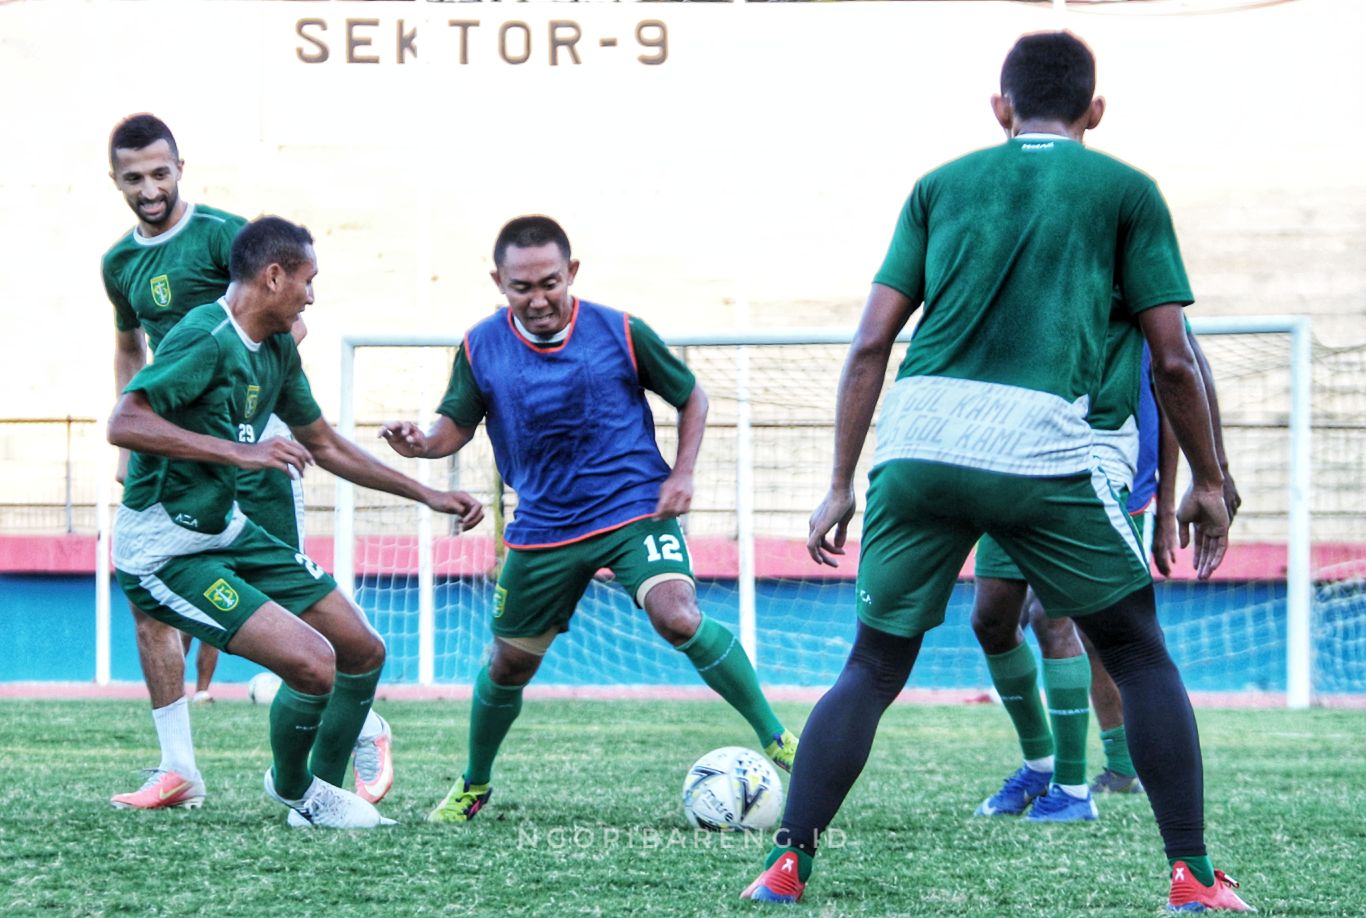 Pemain Persebaya, Rendi Irwan (rompi biru) saat berebut bola dengan pemain Bajul Ijo lainnya dalam latihan di Stadion Gelora Delta Sidoarjo. (foto: Haris/ngopibareng.id)